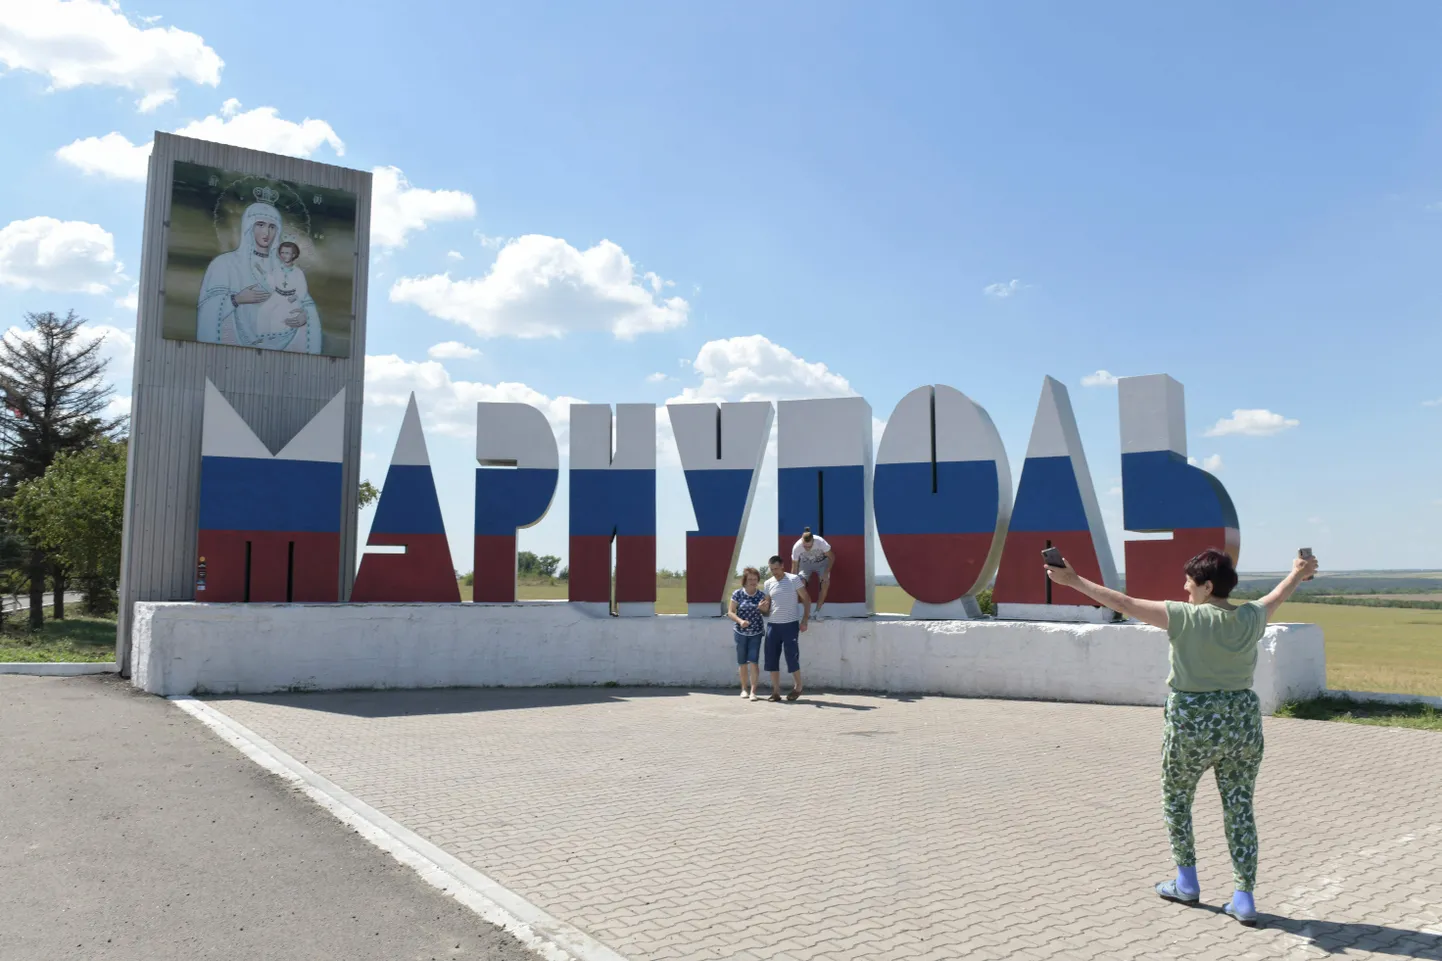 Inimesed poseerivad Vene lipu värvidesse värvitud Mariupoli linna sildi ees